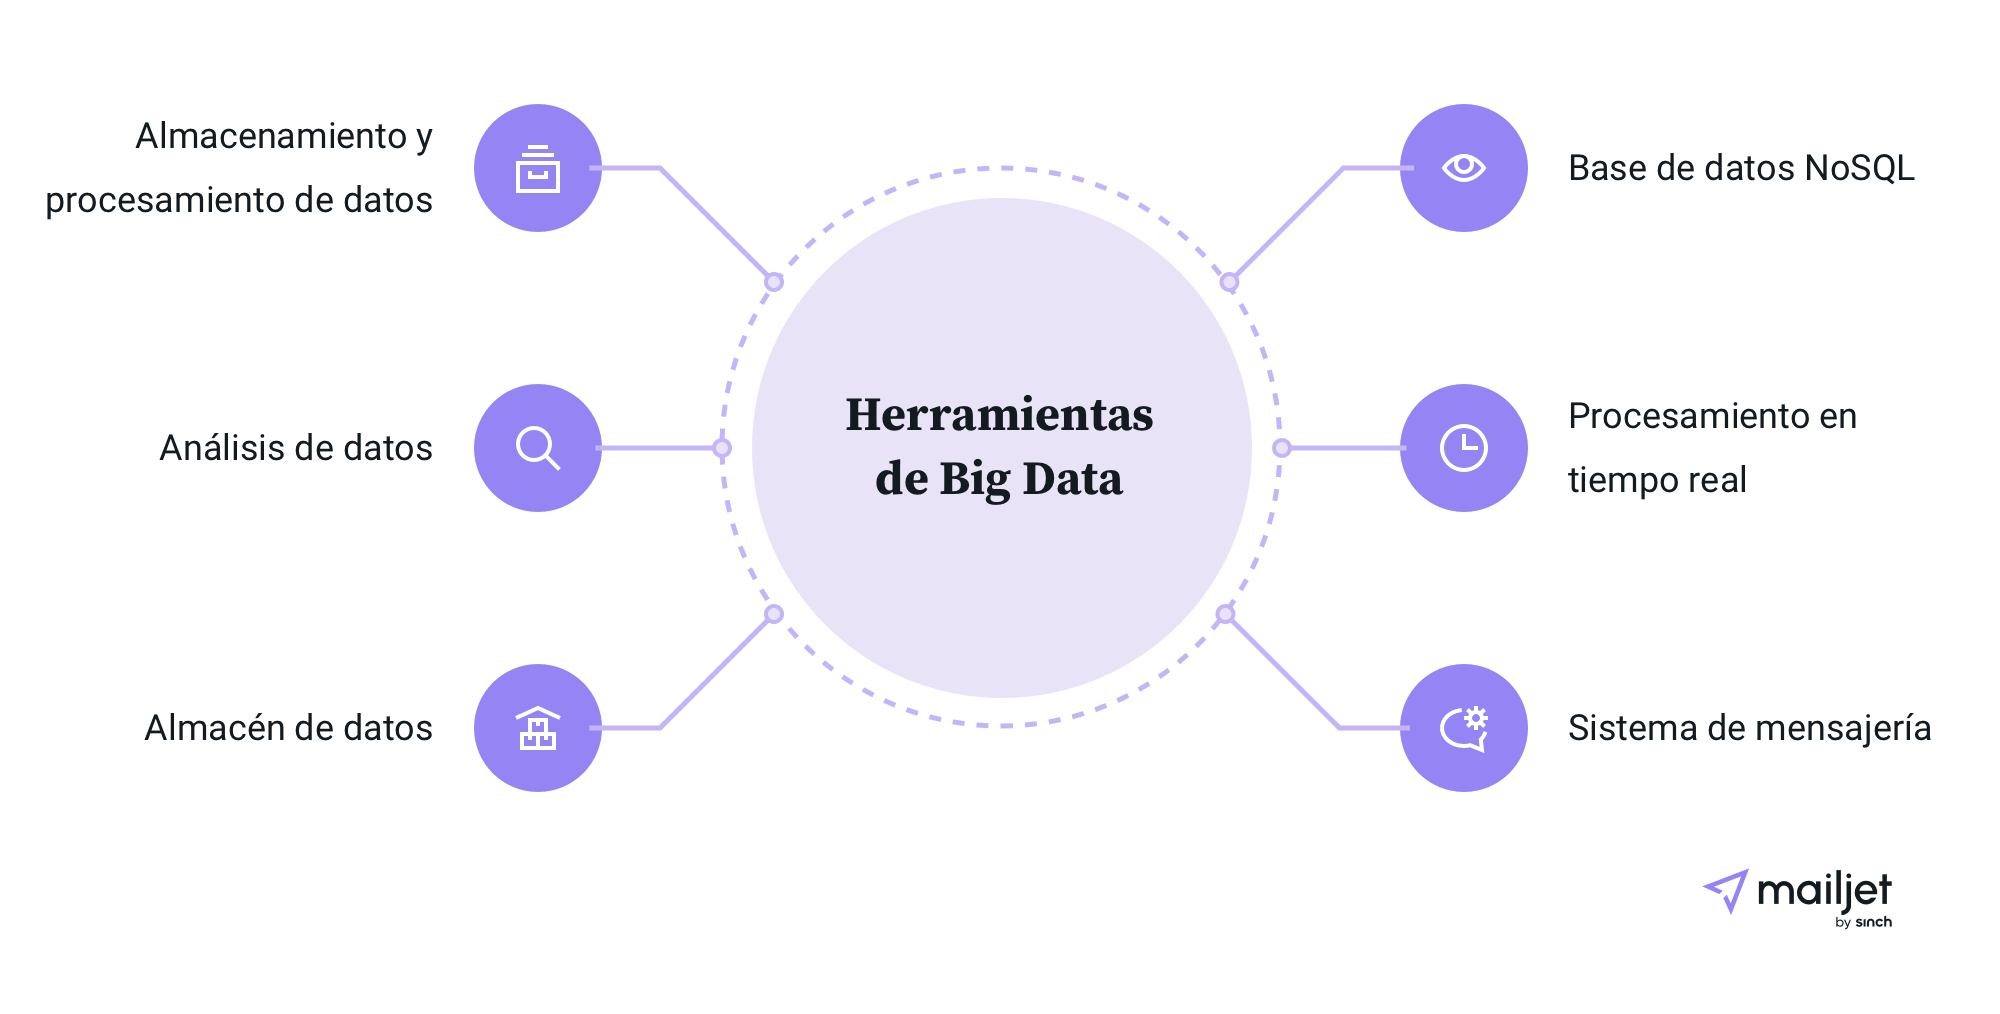 Seis tipos de herramientas diferentes relacionadas con el Big Data